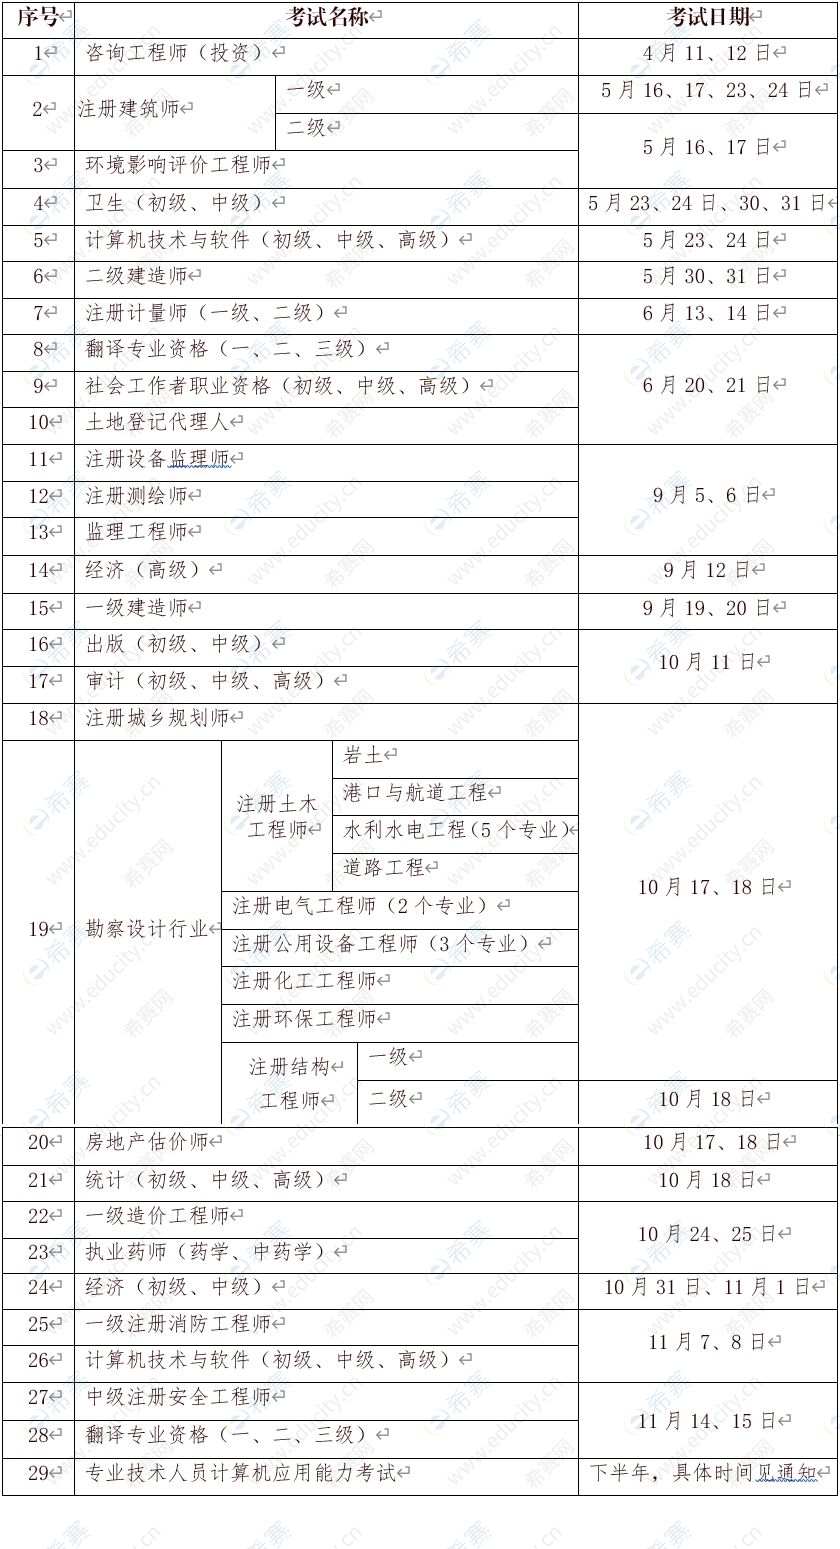 2020年宁夏社会工作师考试计划.jpg